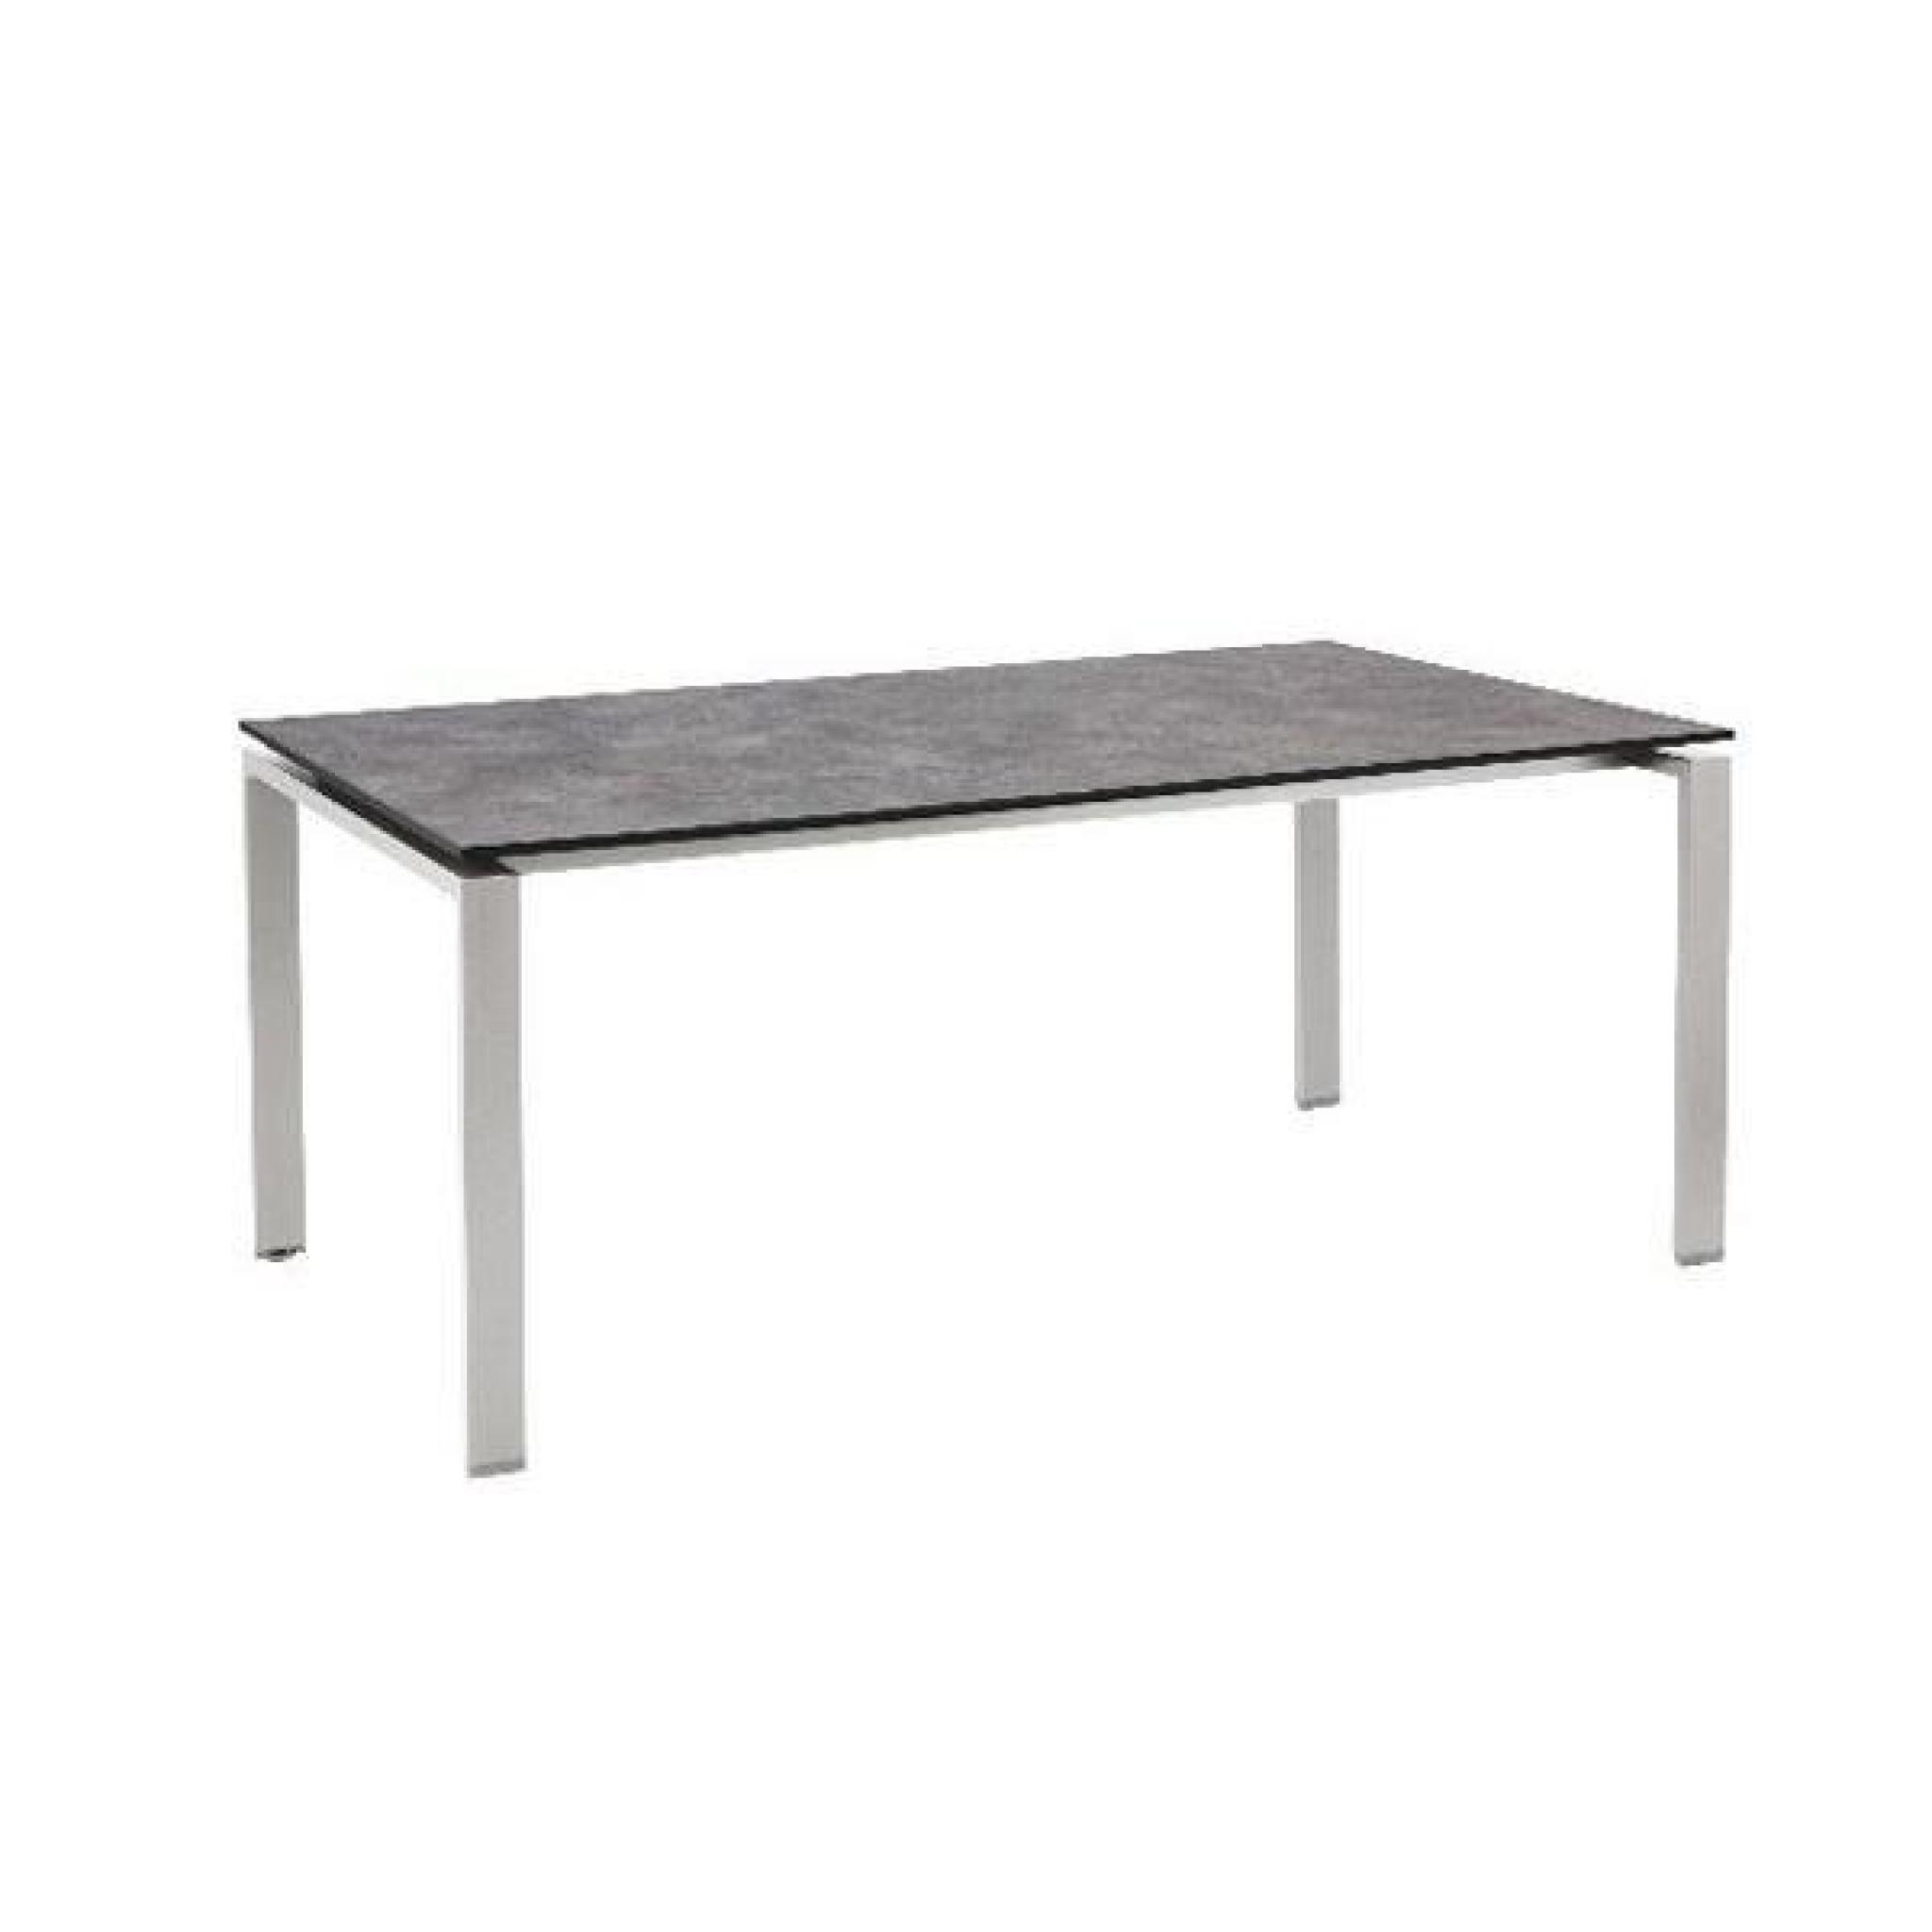 Table de jardin en béton brossé modèle HPL - Couleur anthracite - Dimensions 220 x 100 x 74 cm pas cher